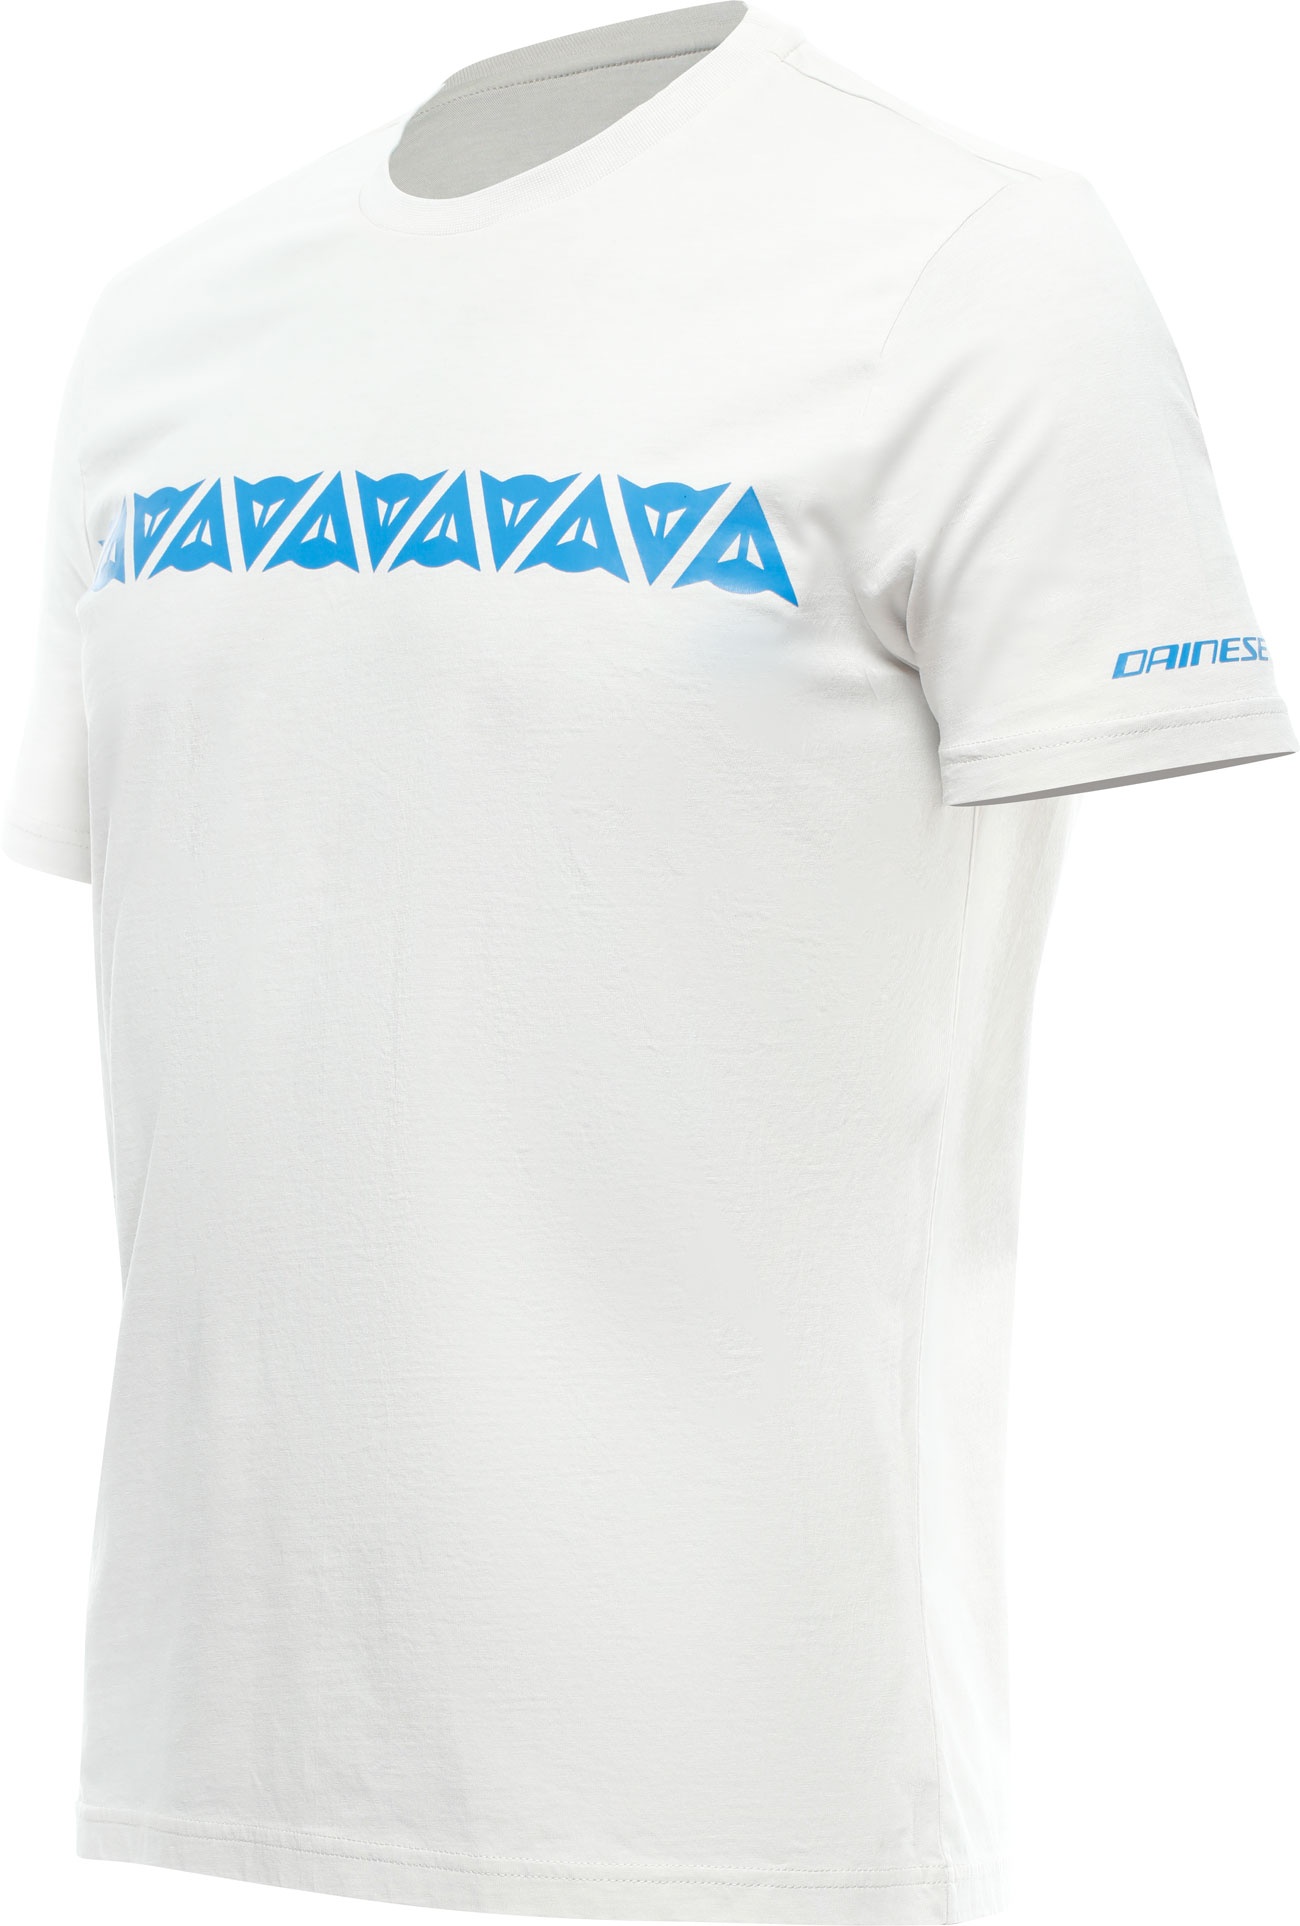 Dainese Stripes, t-shirt - Gris Clair/Bleu Clair - M